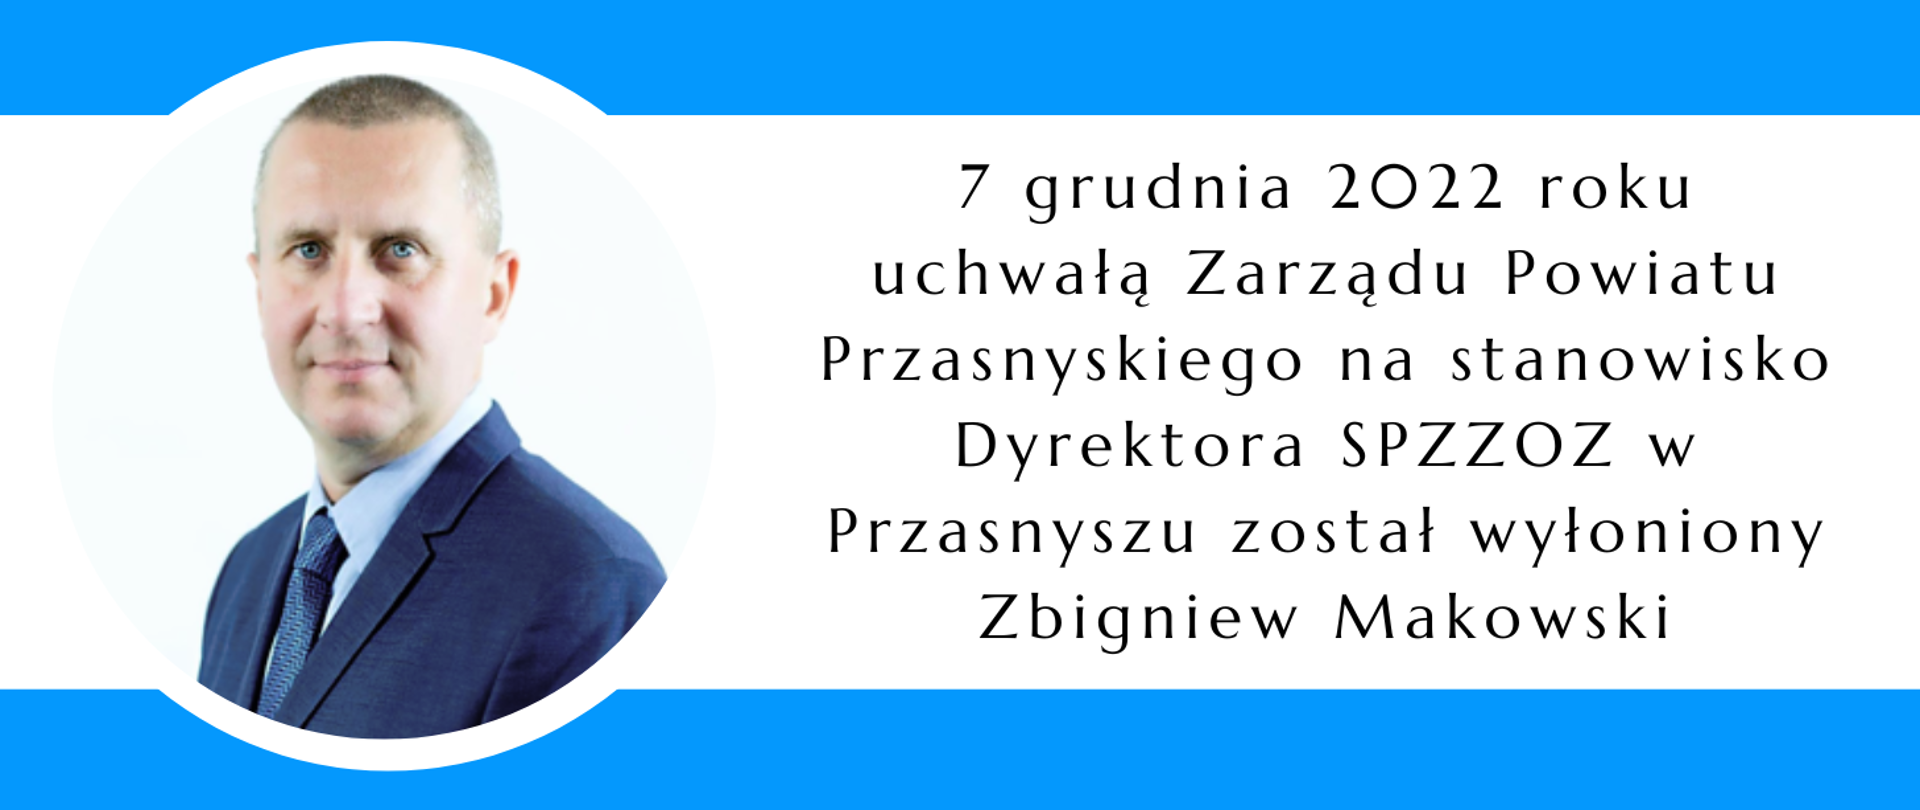 Grafika przedstawia zdjęcie Zbigniewa Makowskiego oraz napis: "7 grudnia 2022 roku uchwałą Zarządu Powiatu Przasnyskiego na stanowisko Dyrektora SPZZOZ w Przasnyszu został wyłoniony Zbigniew Makowski.